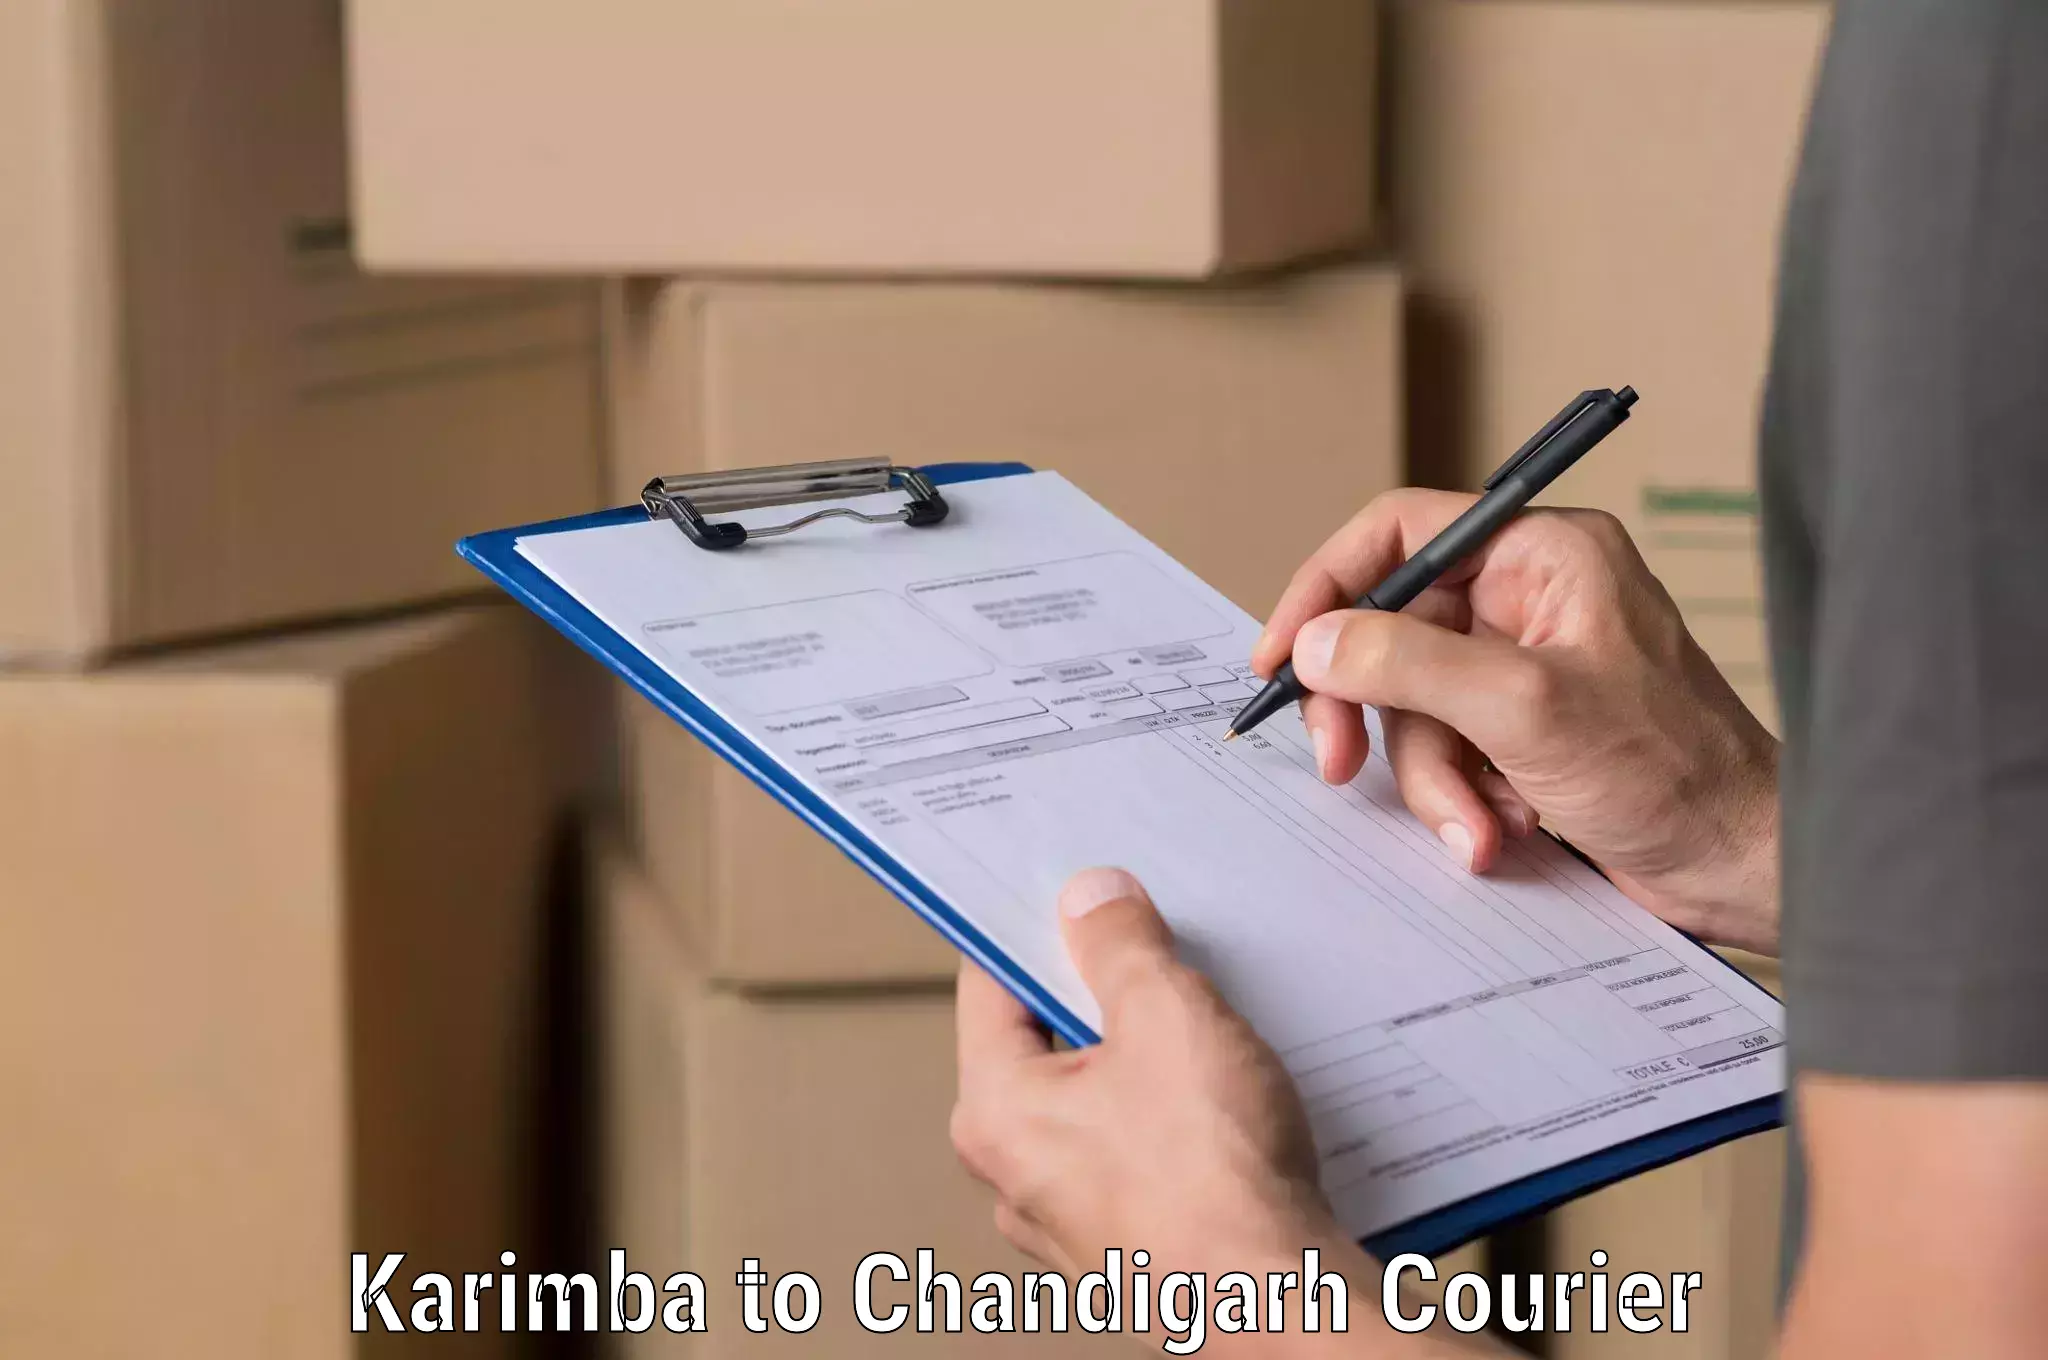 Advanced shipping technology Karimba to Chandigarh